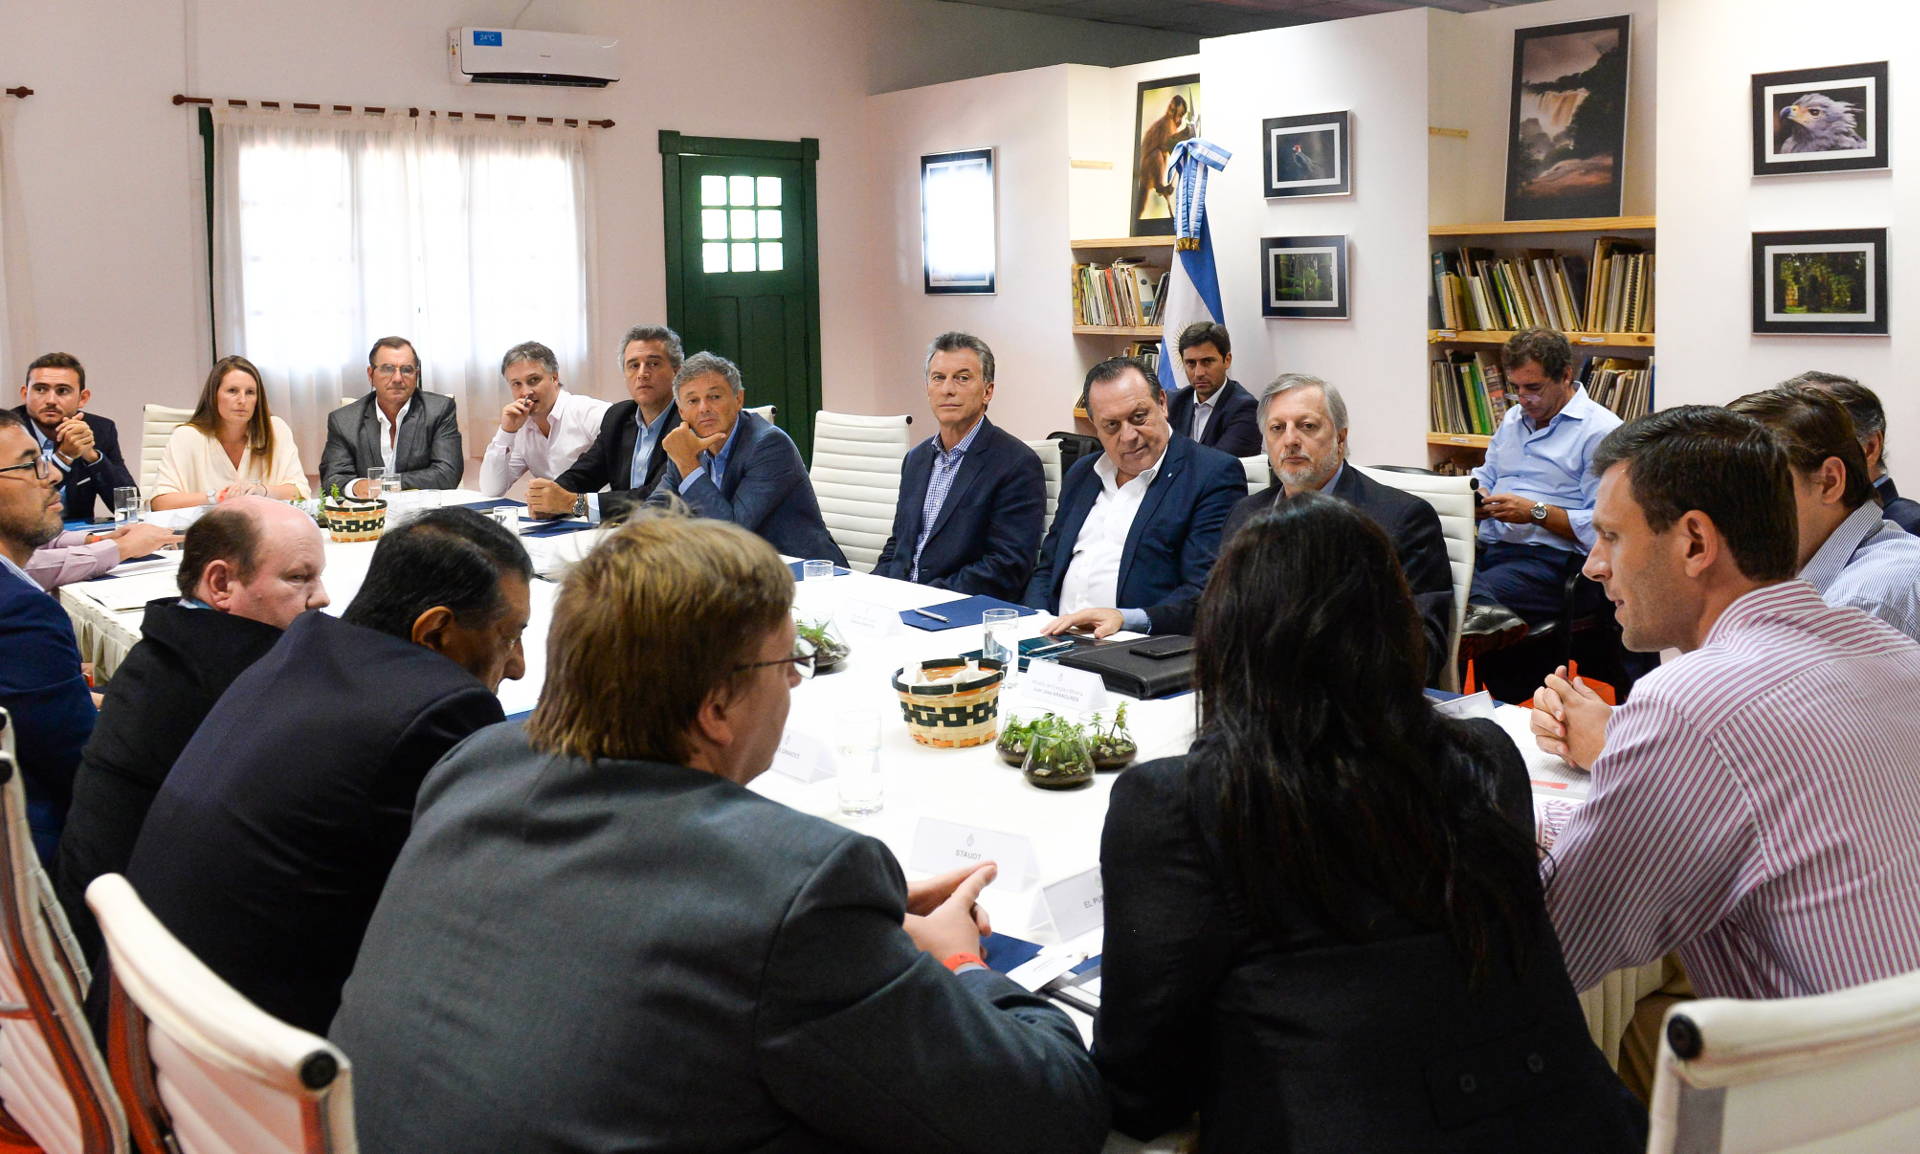 El Presidente mantuvo una reunión con empresarios de la región Noreste en Puerto Iguazú